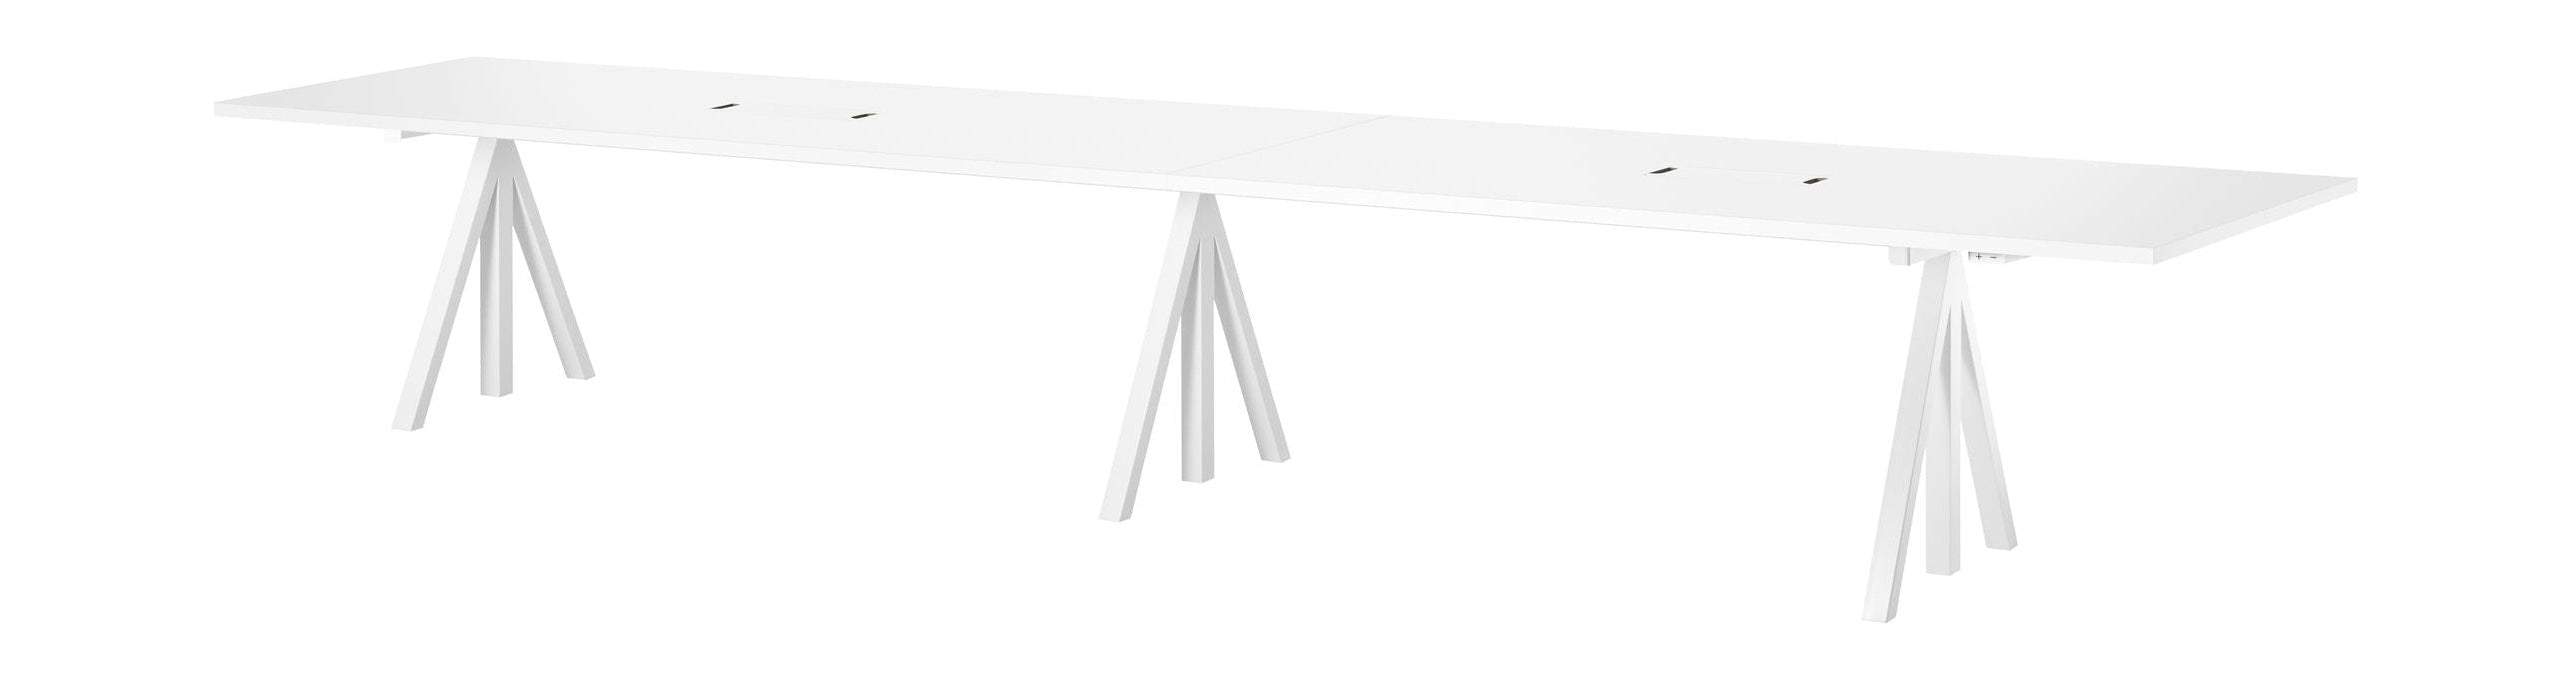 Furnitura della corda Altezza Conferenza regolabile Tabella 90x180 cm, laminato bianco